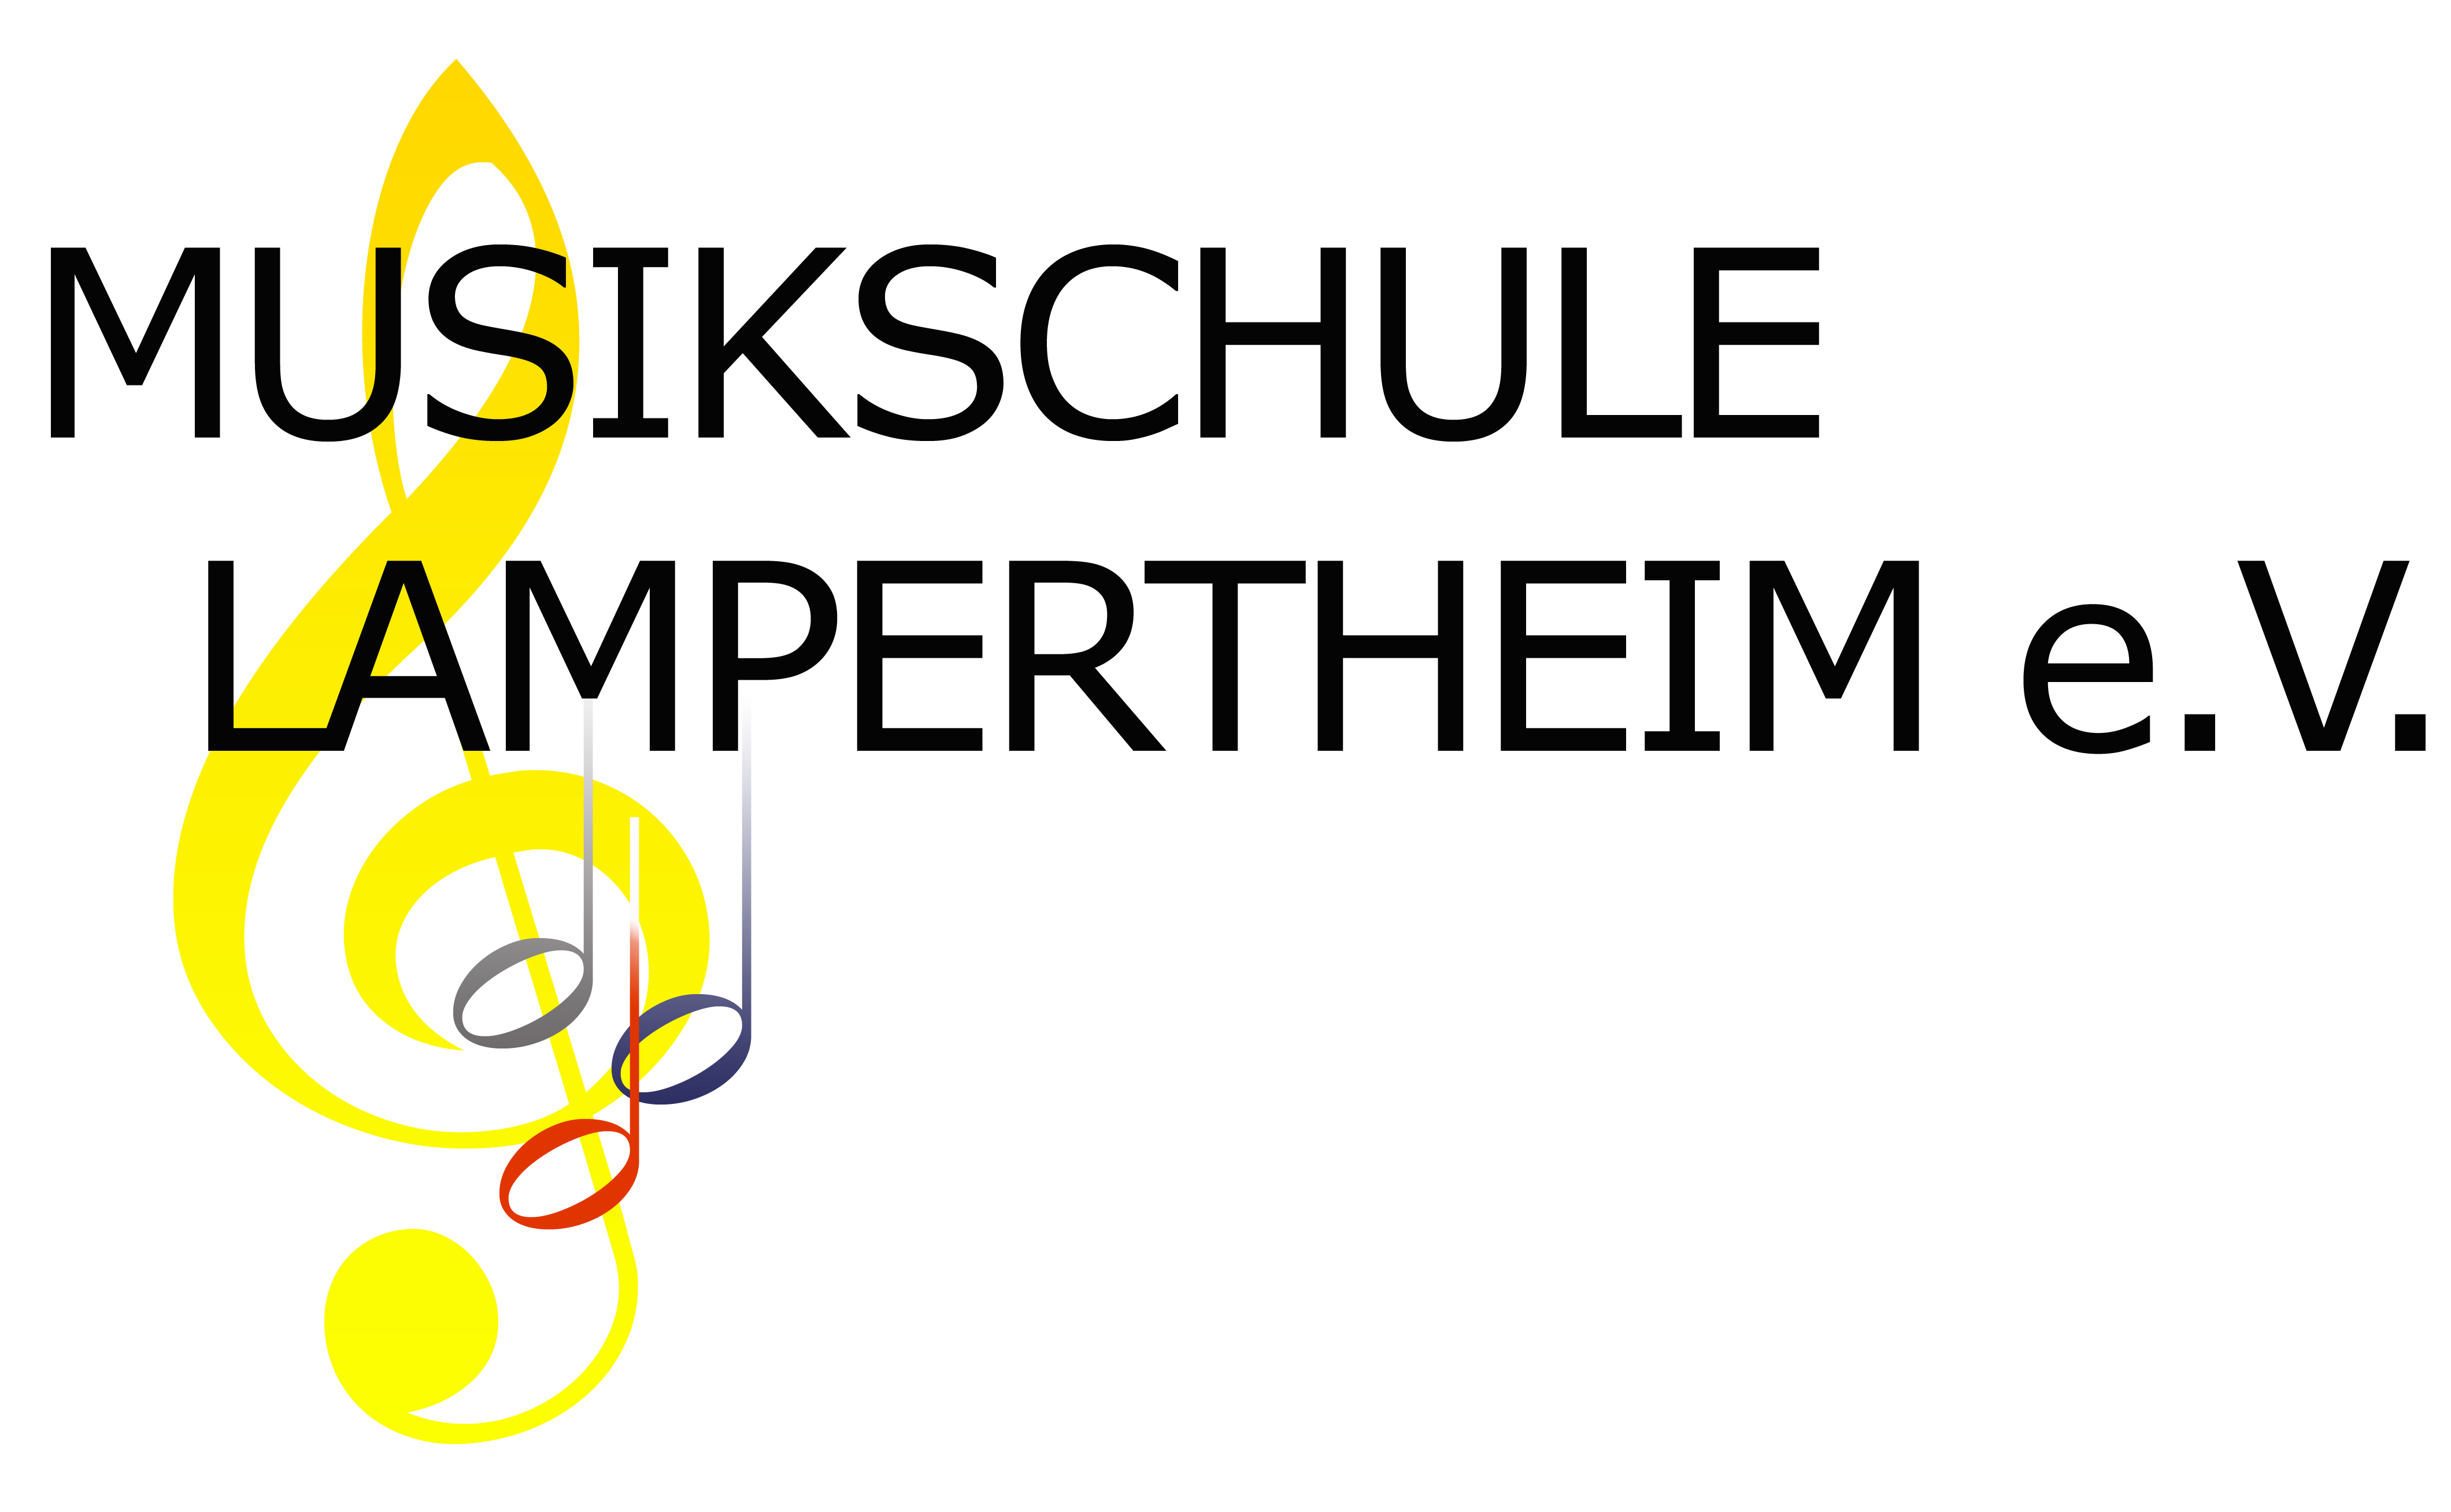 Städtische Musikschule Pfaffenhofen